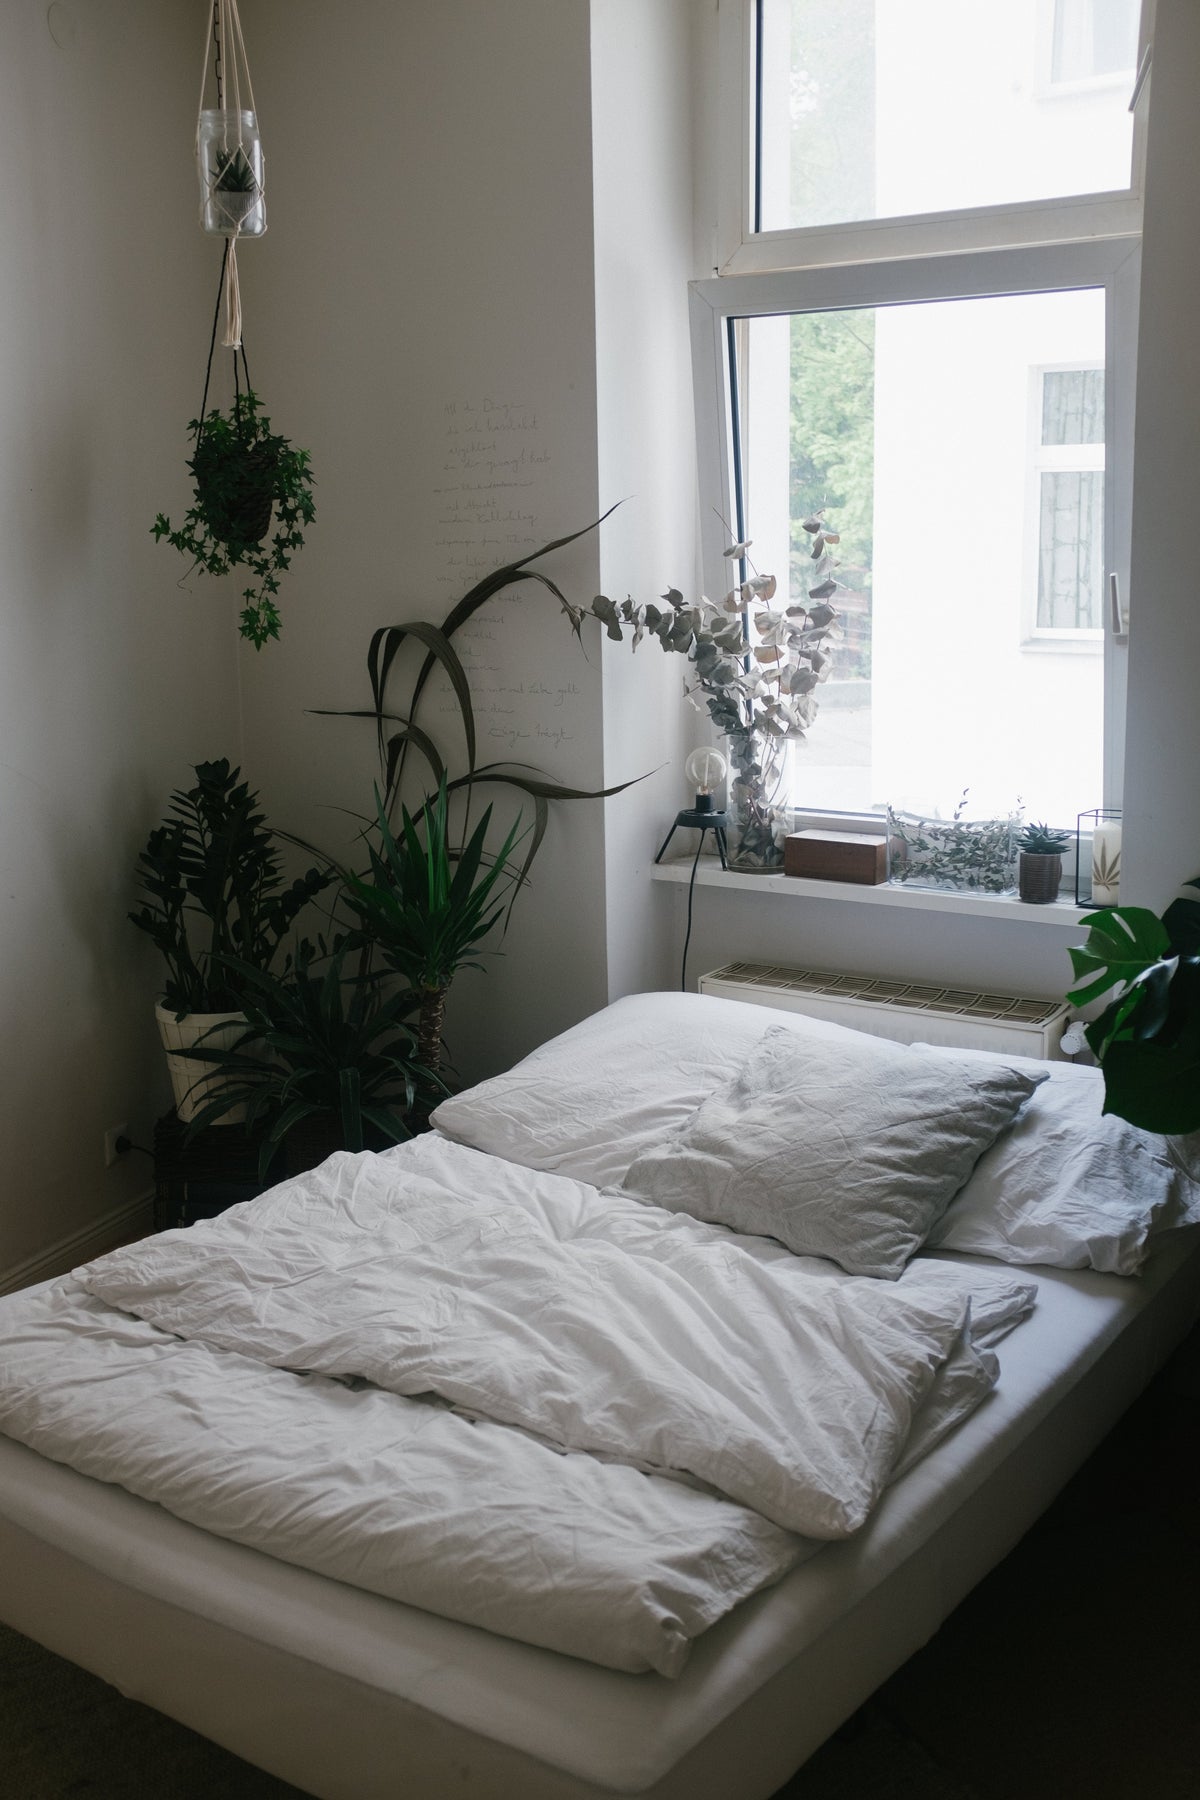 Minimalistisch eingerichtetes Schlafzimmer mit vielen Pflanzen. Die Bettwäsche ist weiss.